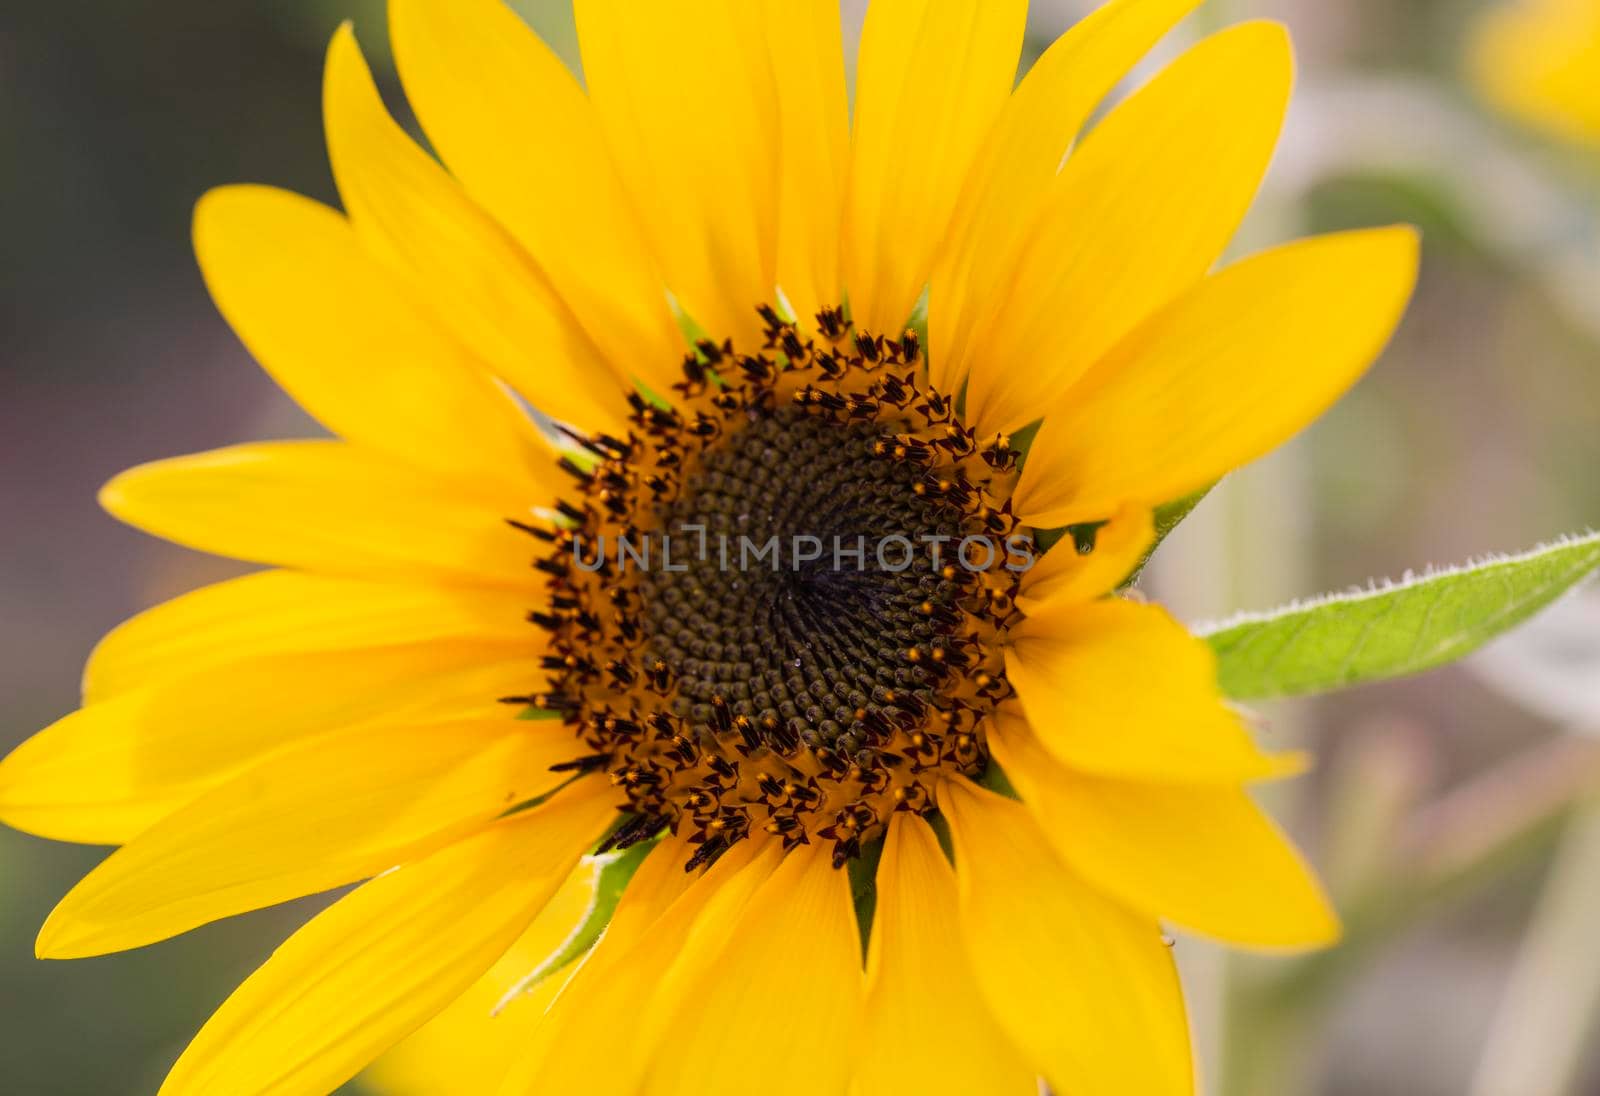 Closeup of a sunflower yellow flower head by paulvinten